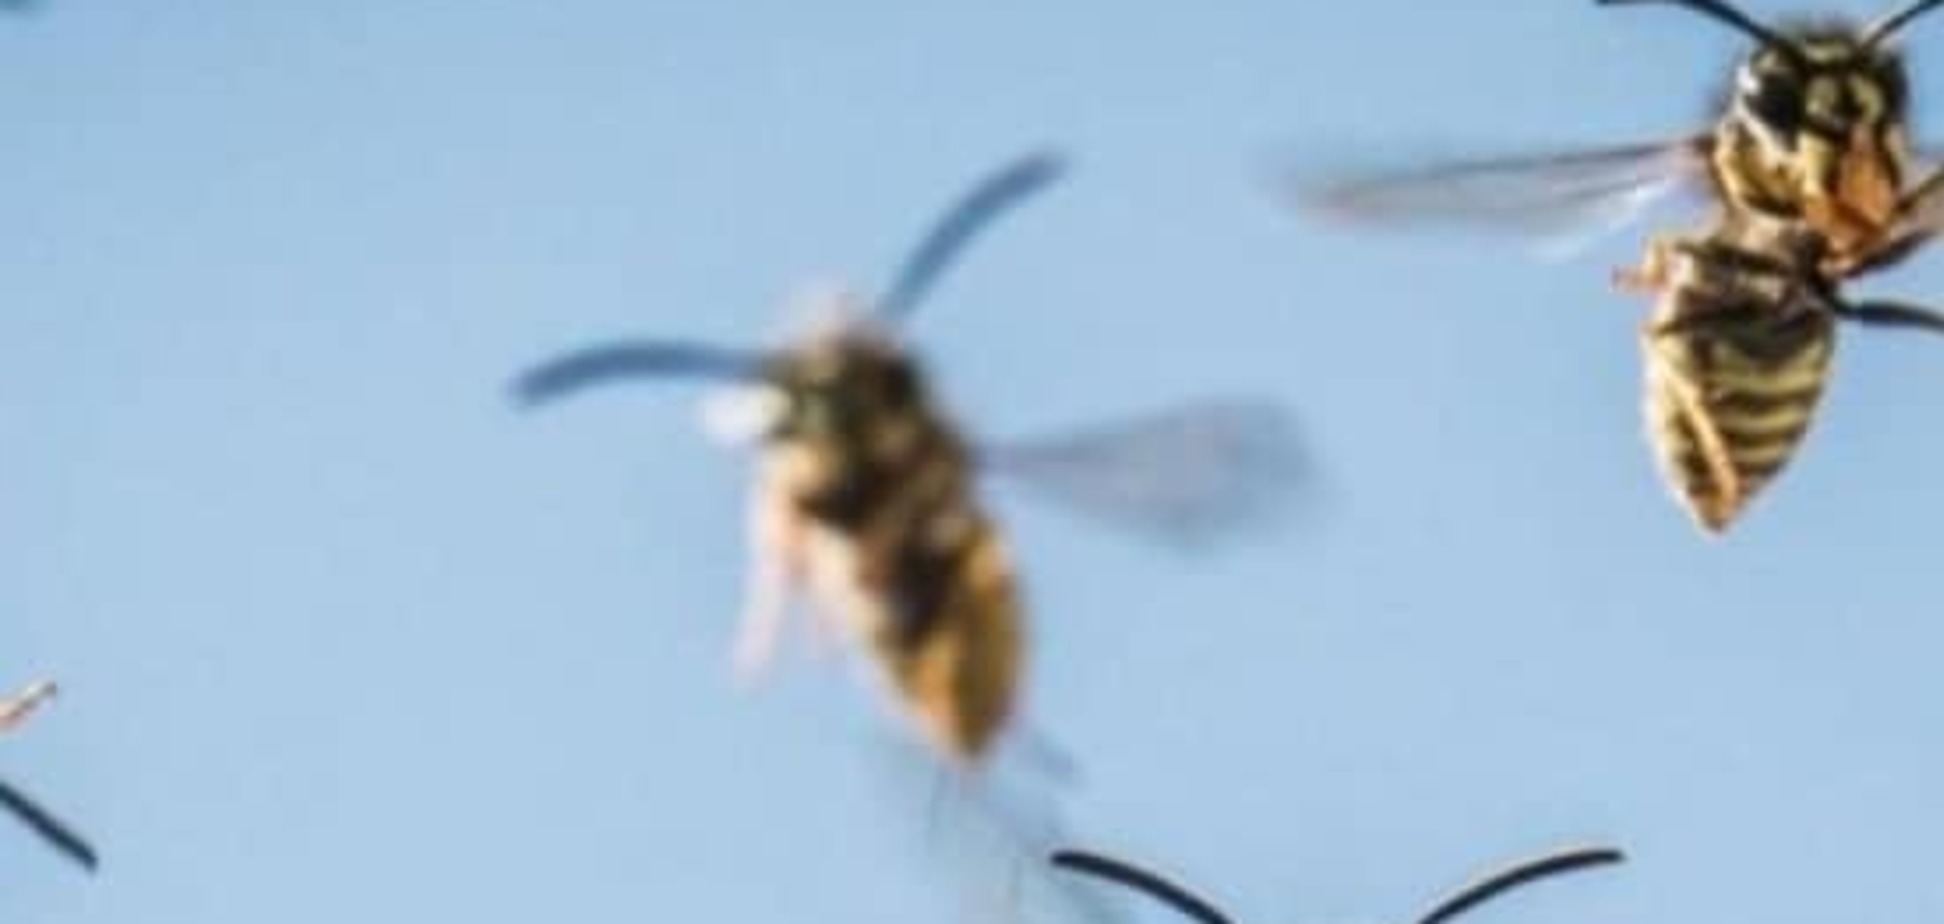 Не шутки: советы по защите от укуса насекомых 